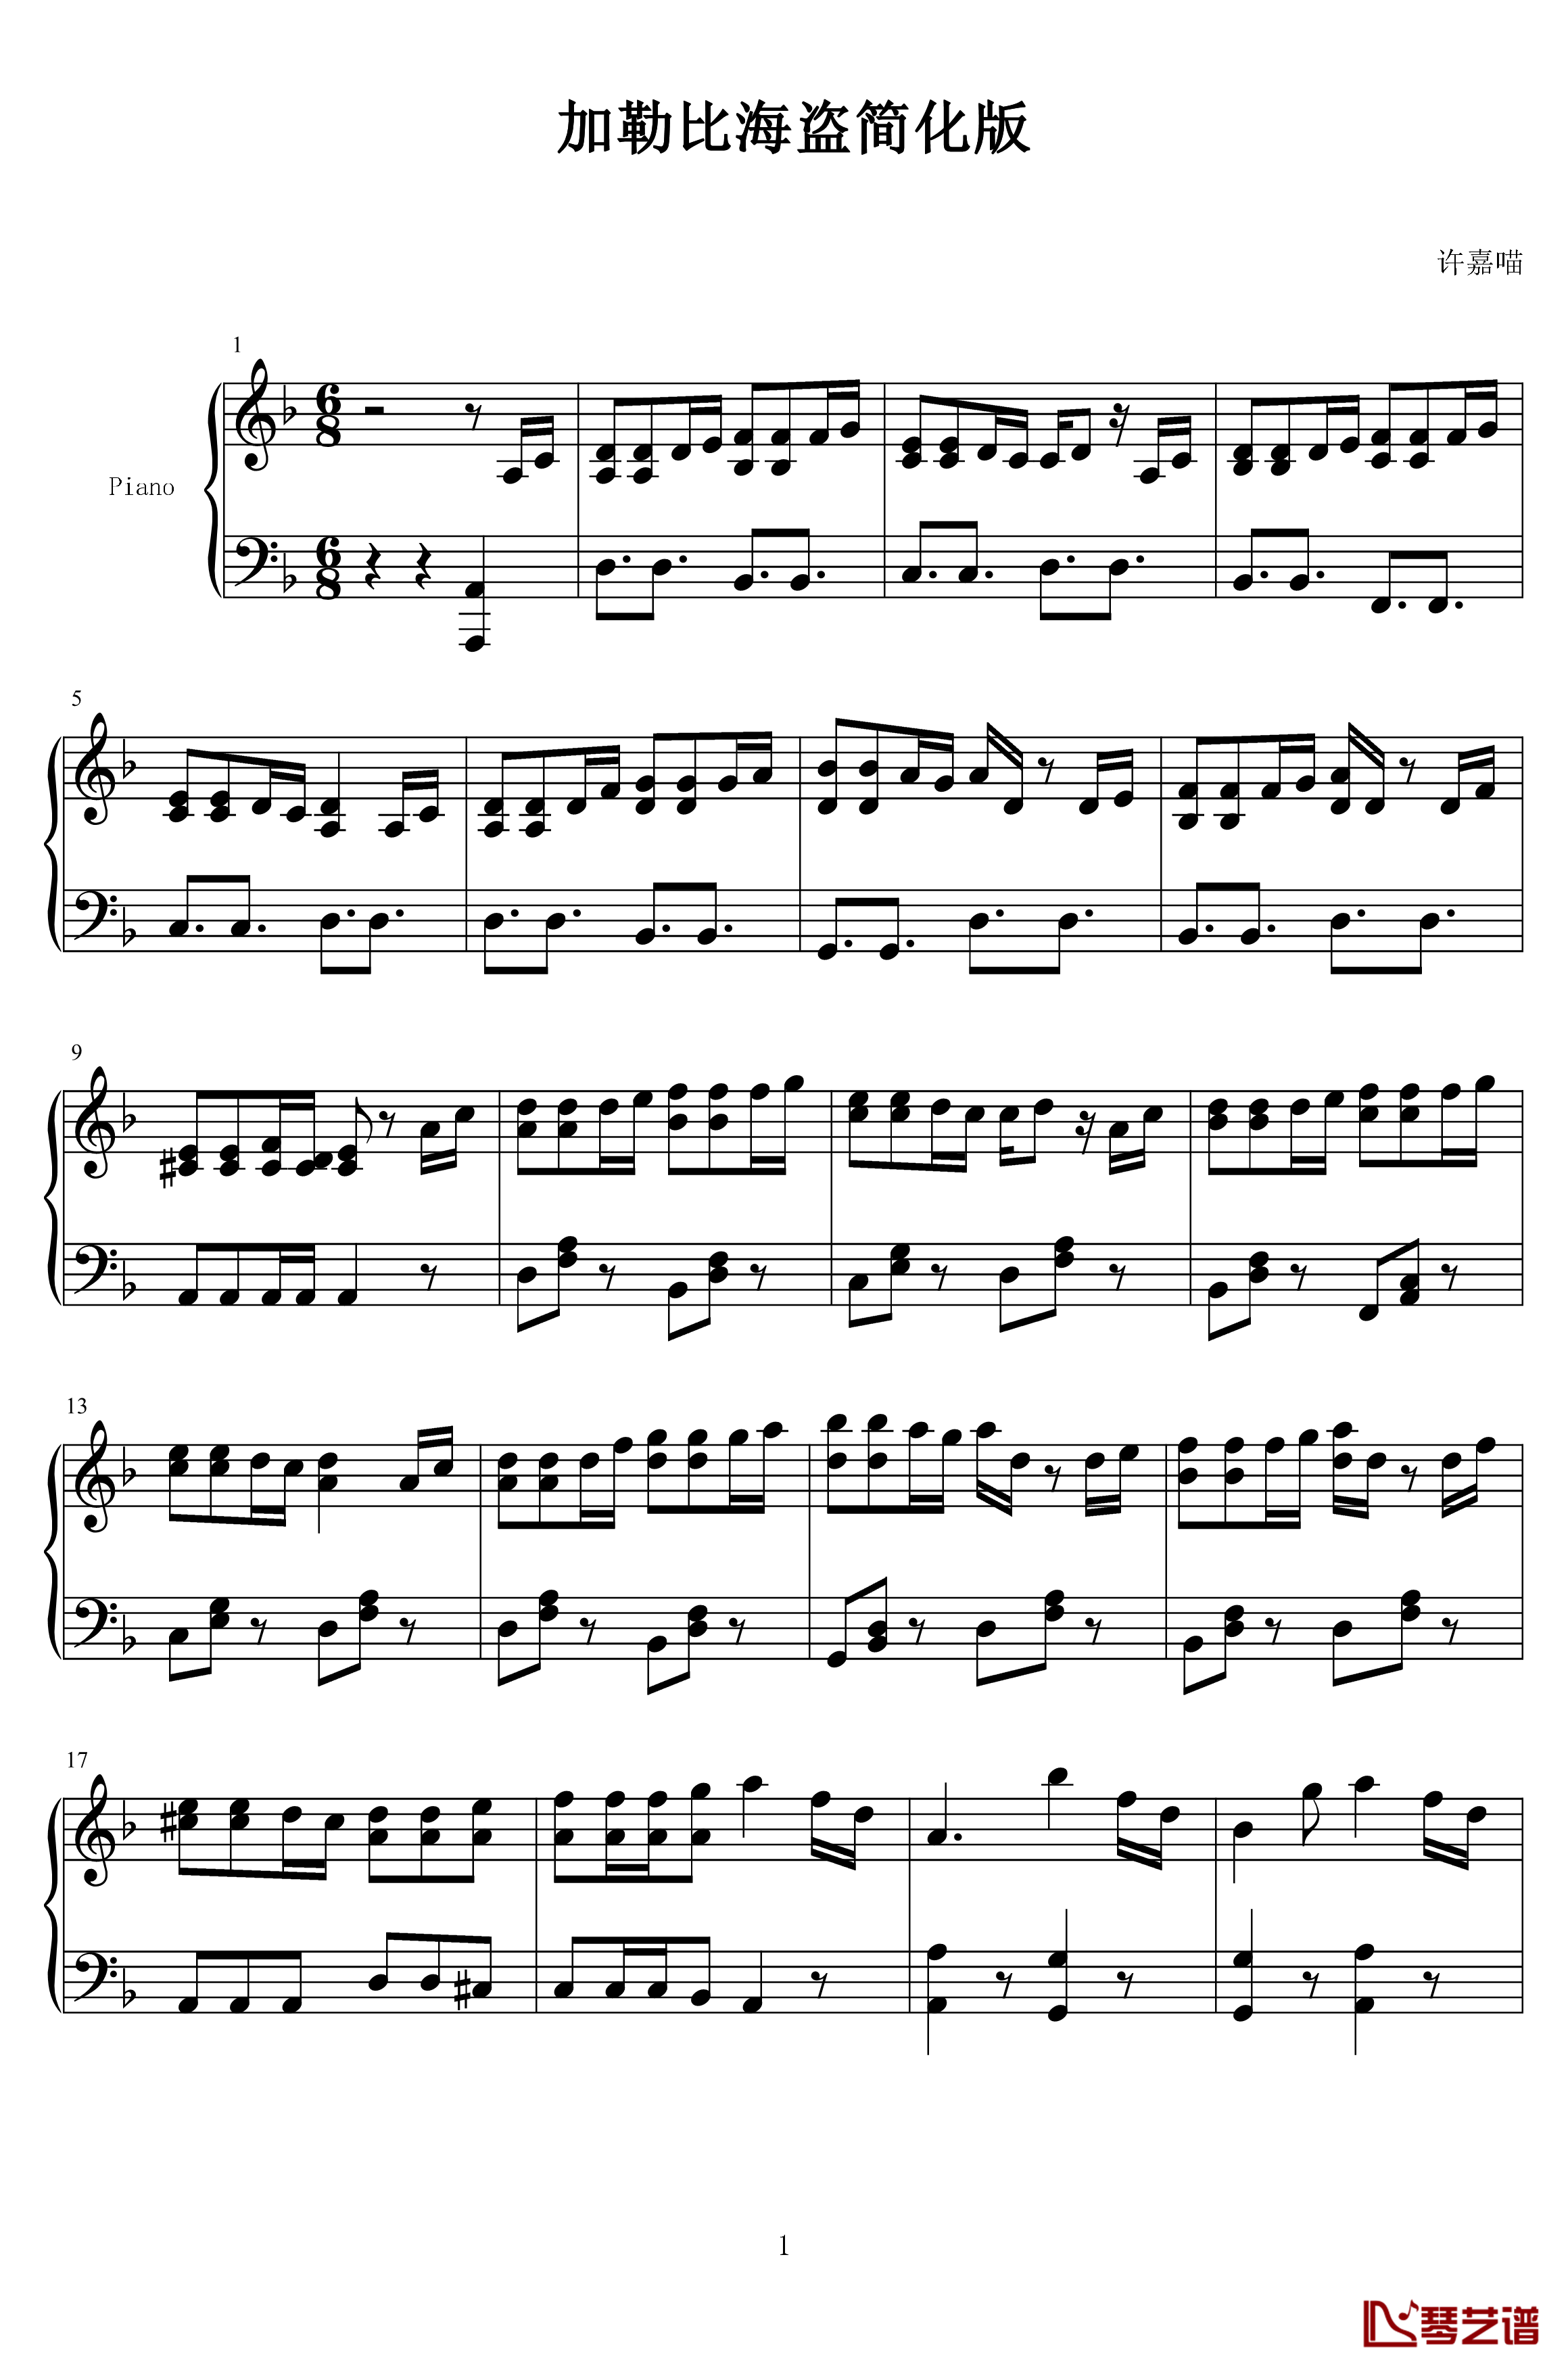 加勒比海盗钢琴谱 简化版-马克西姆-Maksim·Mrvica1